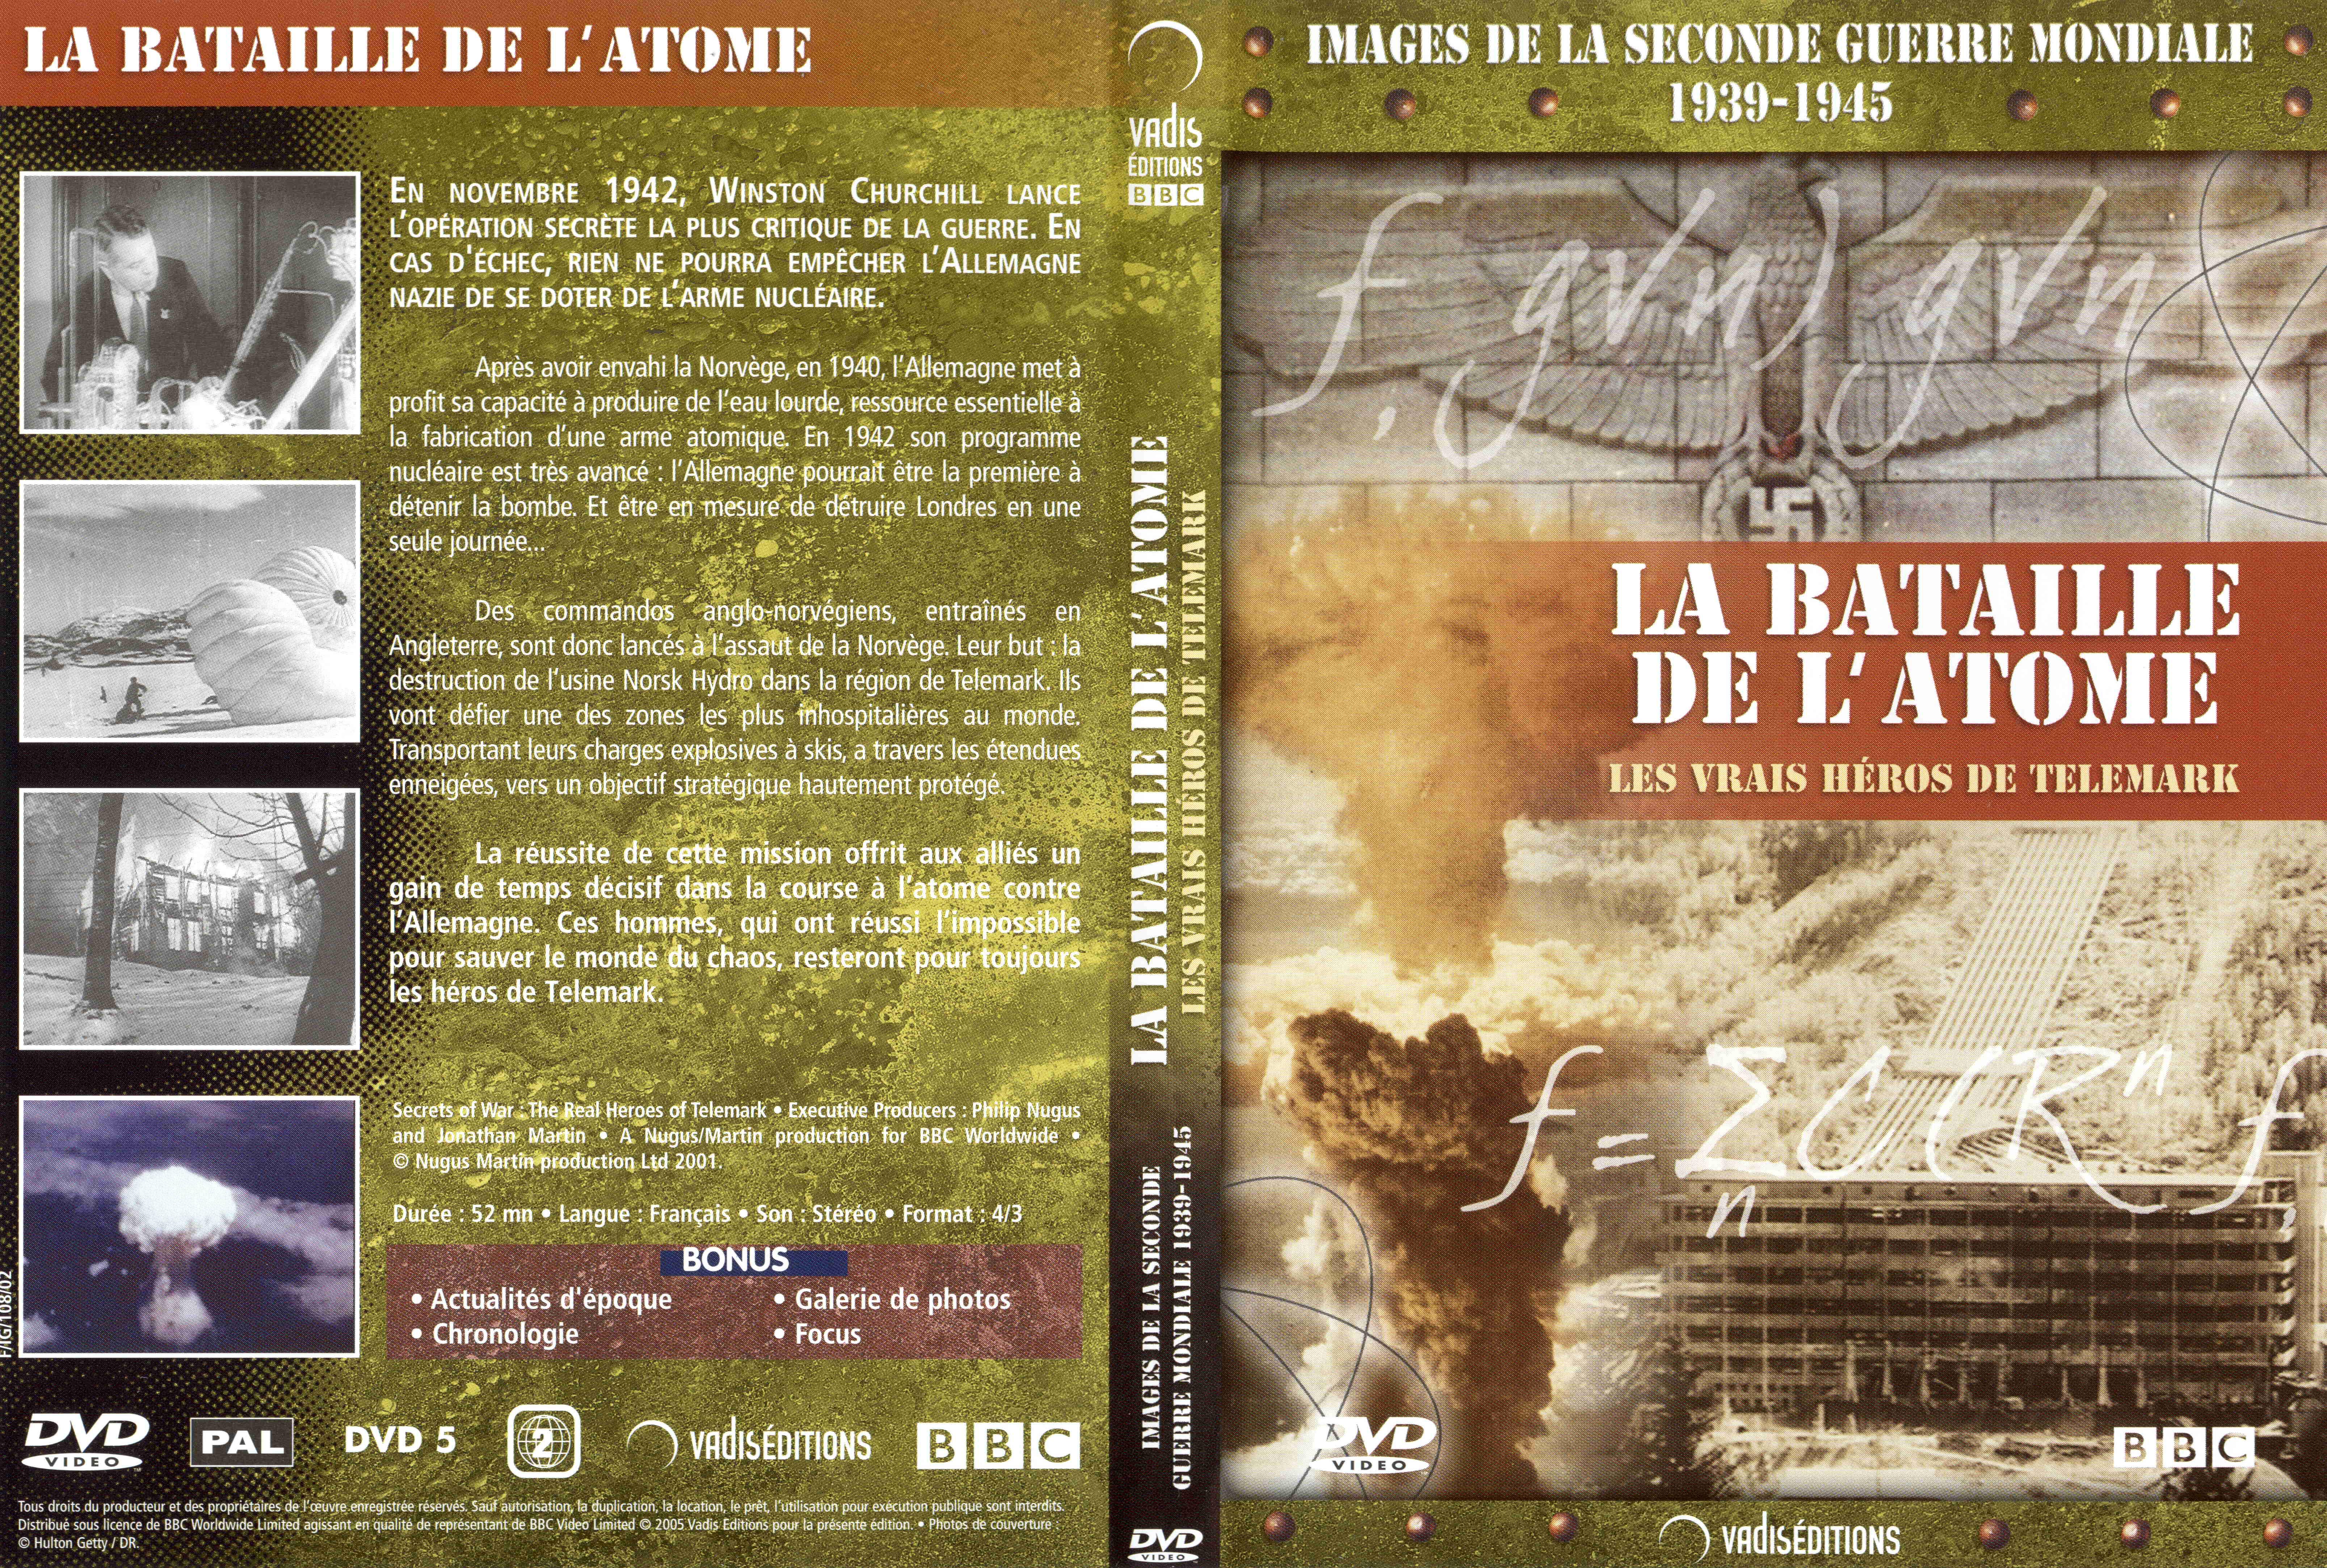 Jaquette DVD Images de la seconde guerre mondiale - La bataille de l